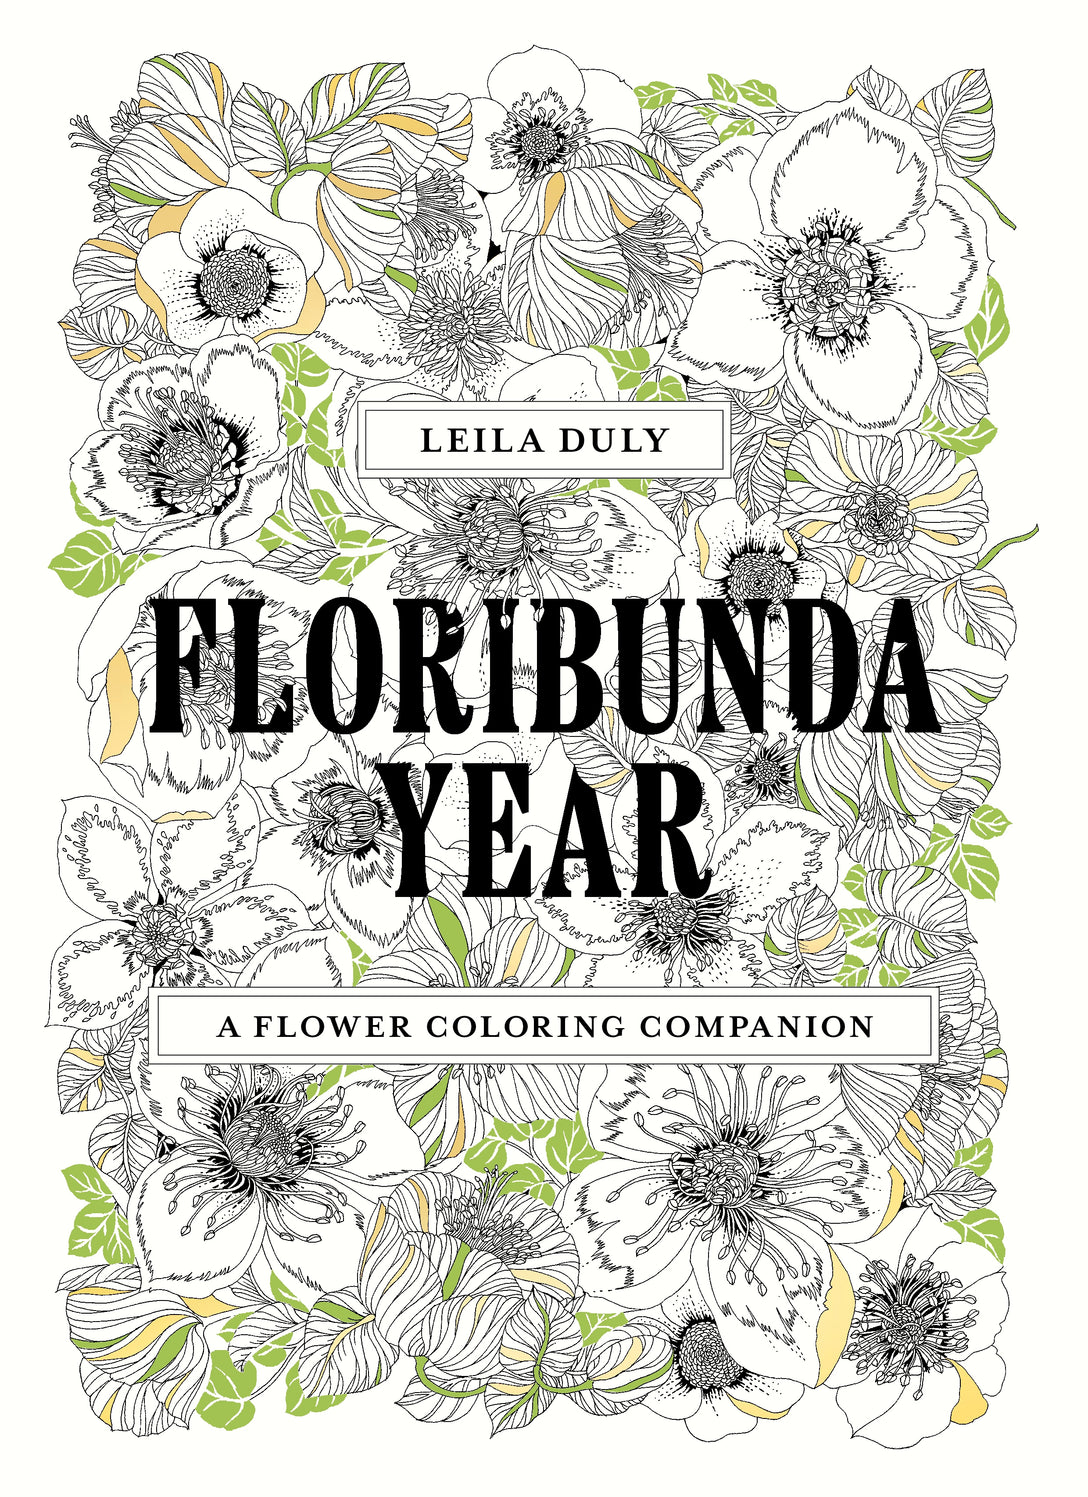 Floribunda Year by Leila Duly